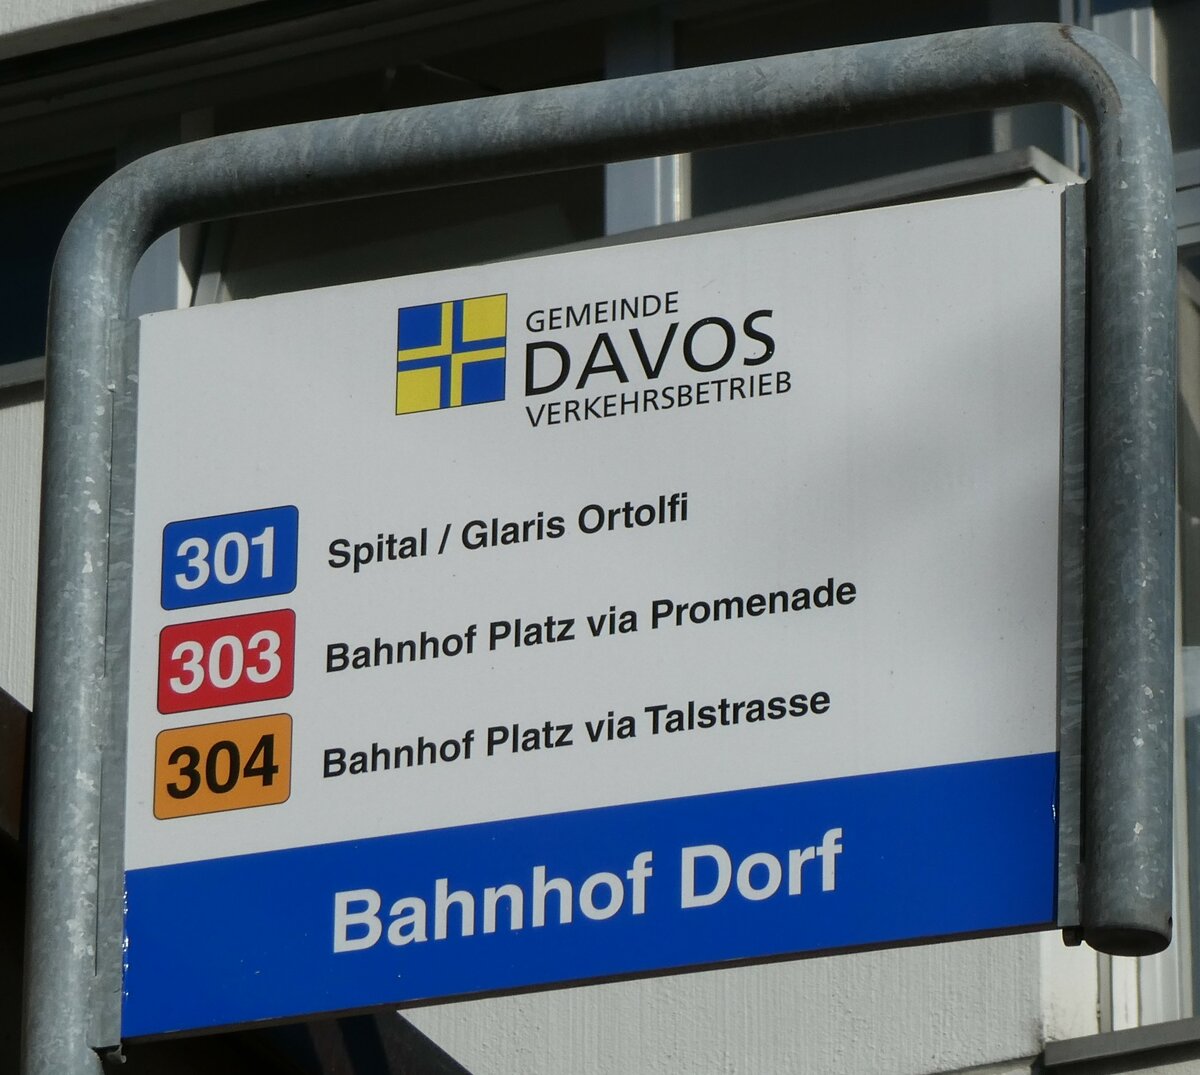 (230'528) - GEMEINDE DAVOS VERKEHRSBETRIEB-Haltestellenschild - Davos. Bahnhof Dorf - am 12. November 2021